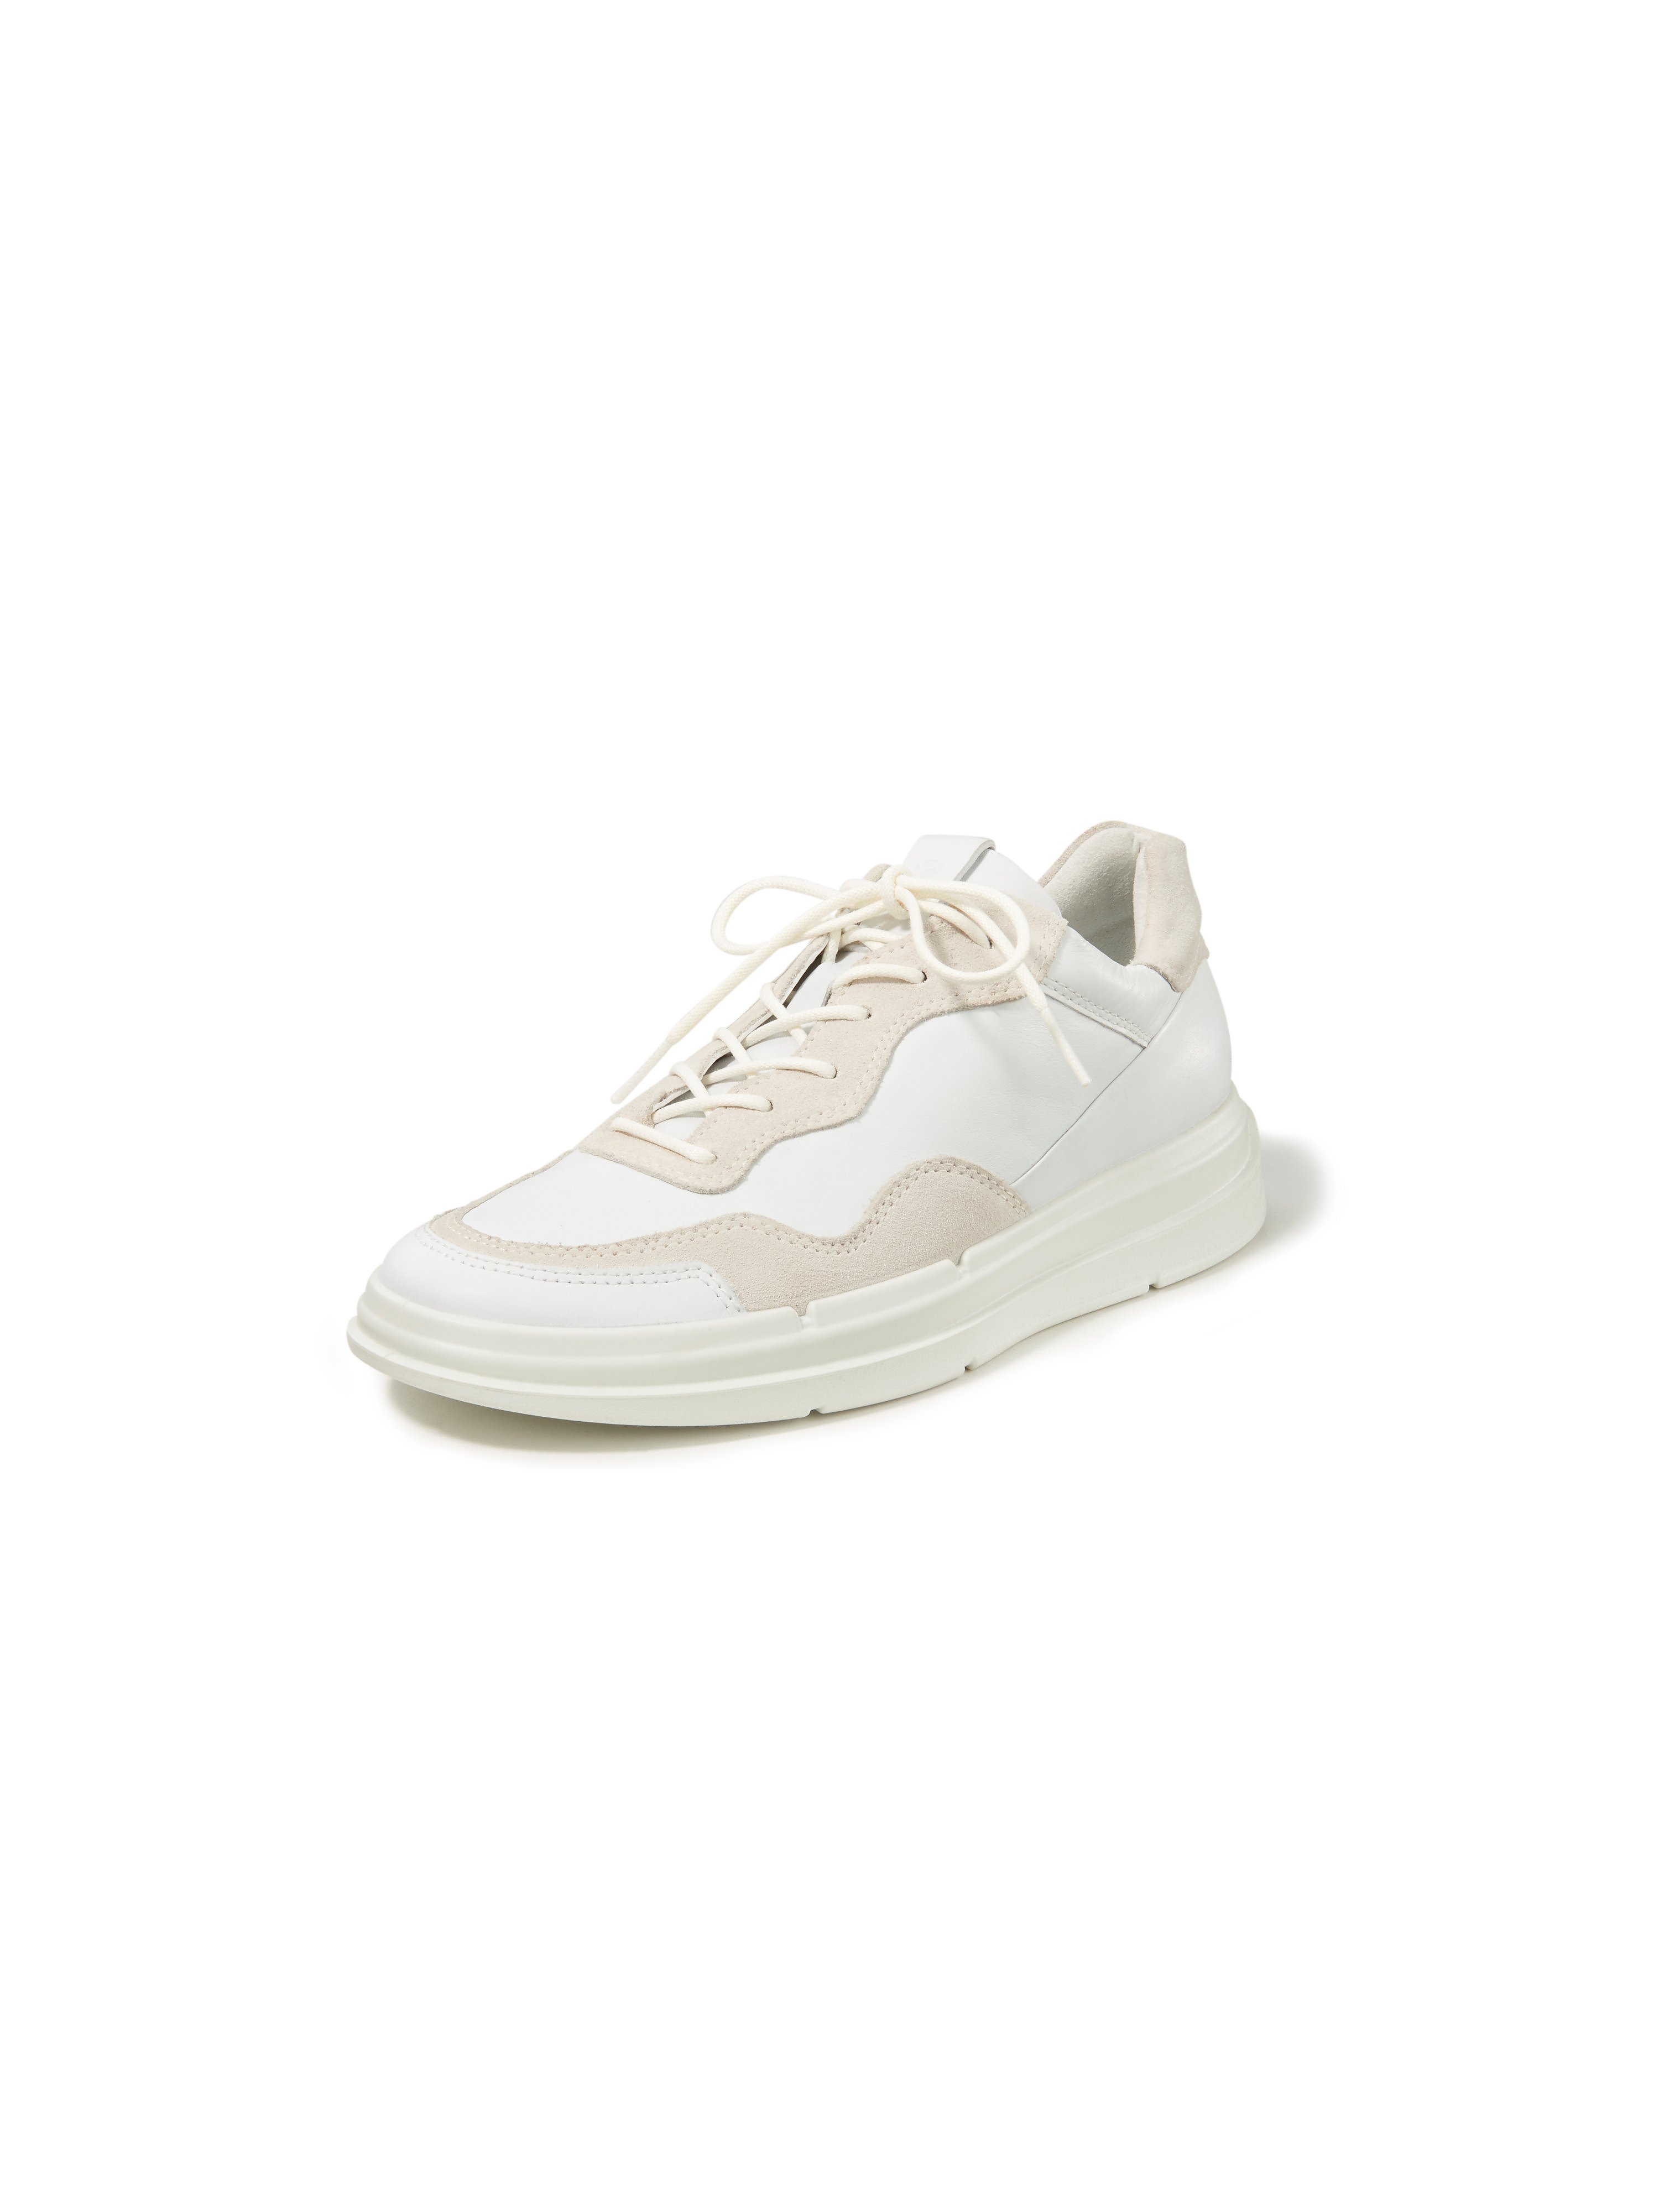 Les sneakers modèle Soft X W  Ecco blanc